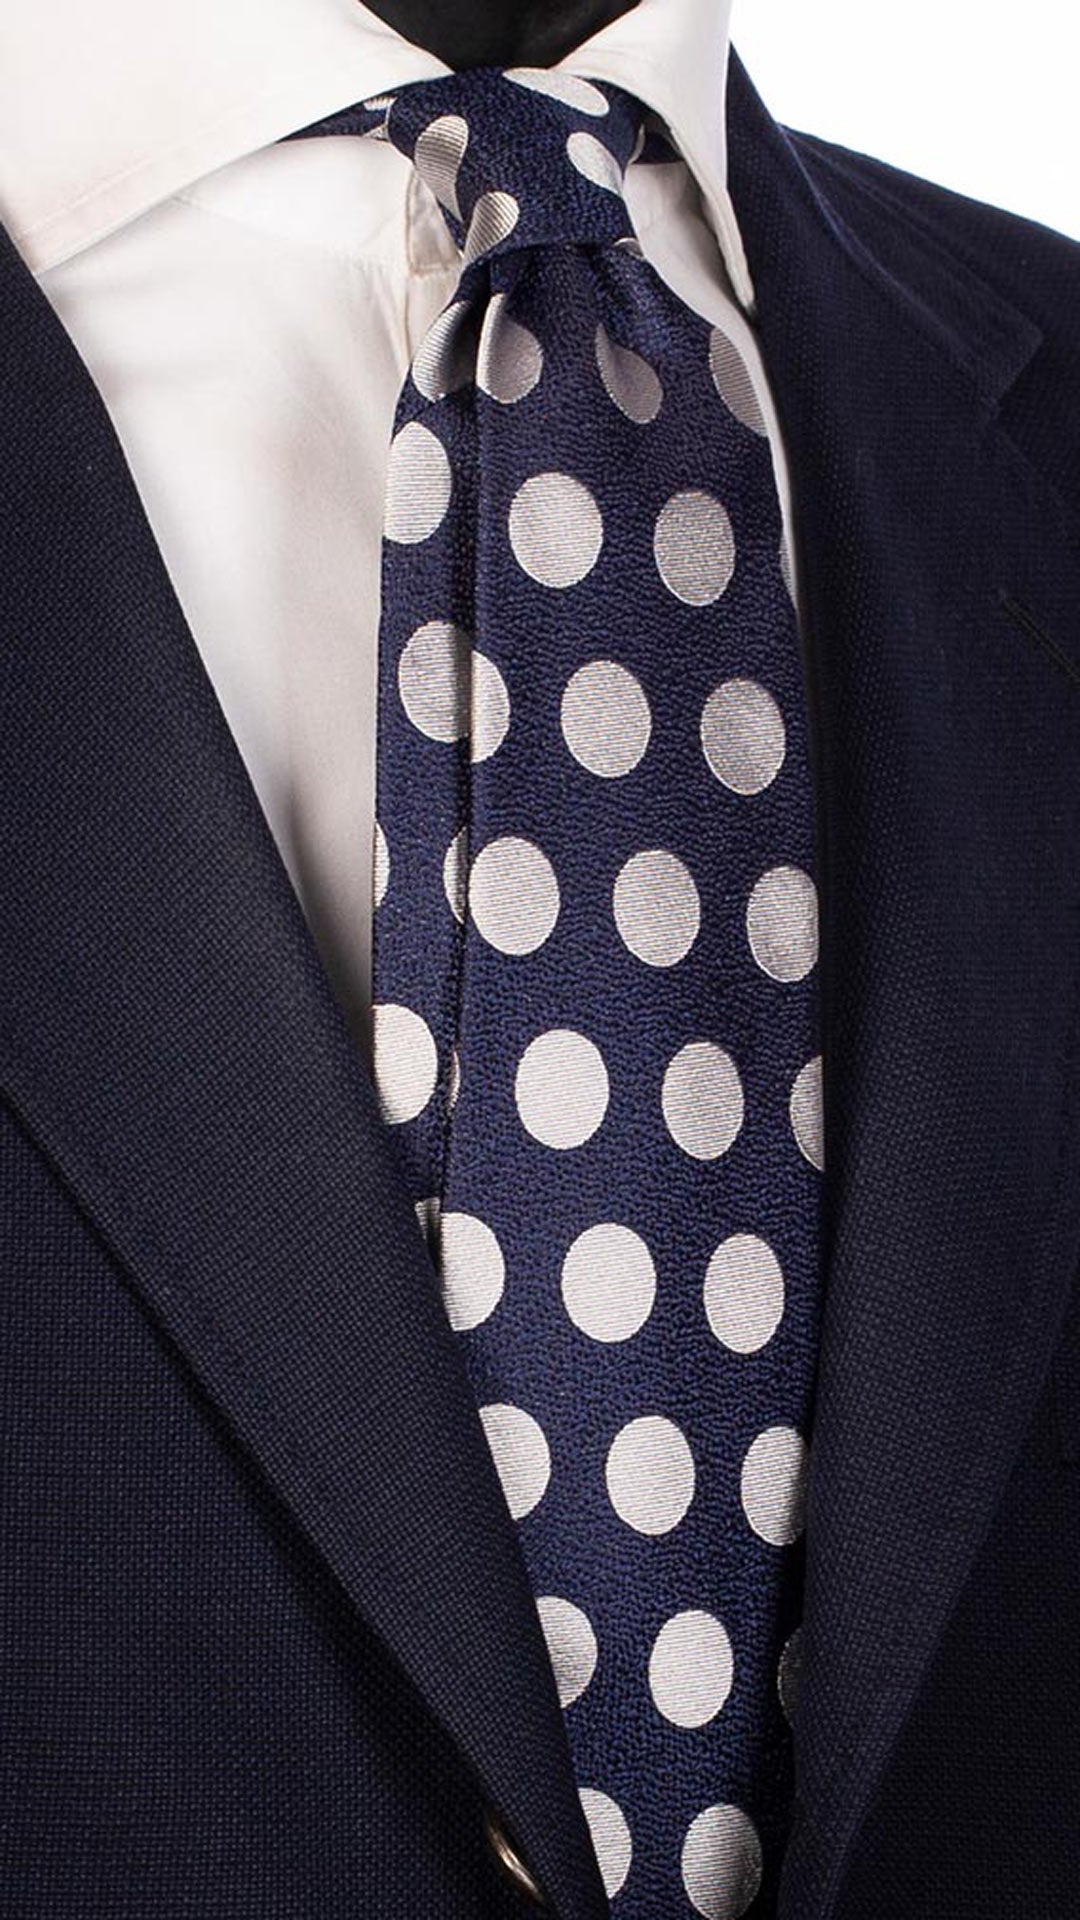 Cravatta da Cerimonia di Seta Blu Navy Pois Grigio Chiaro CY5317 Made in Italy Graffeo Cravatte